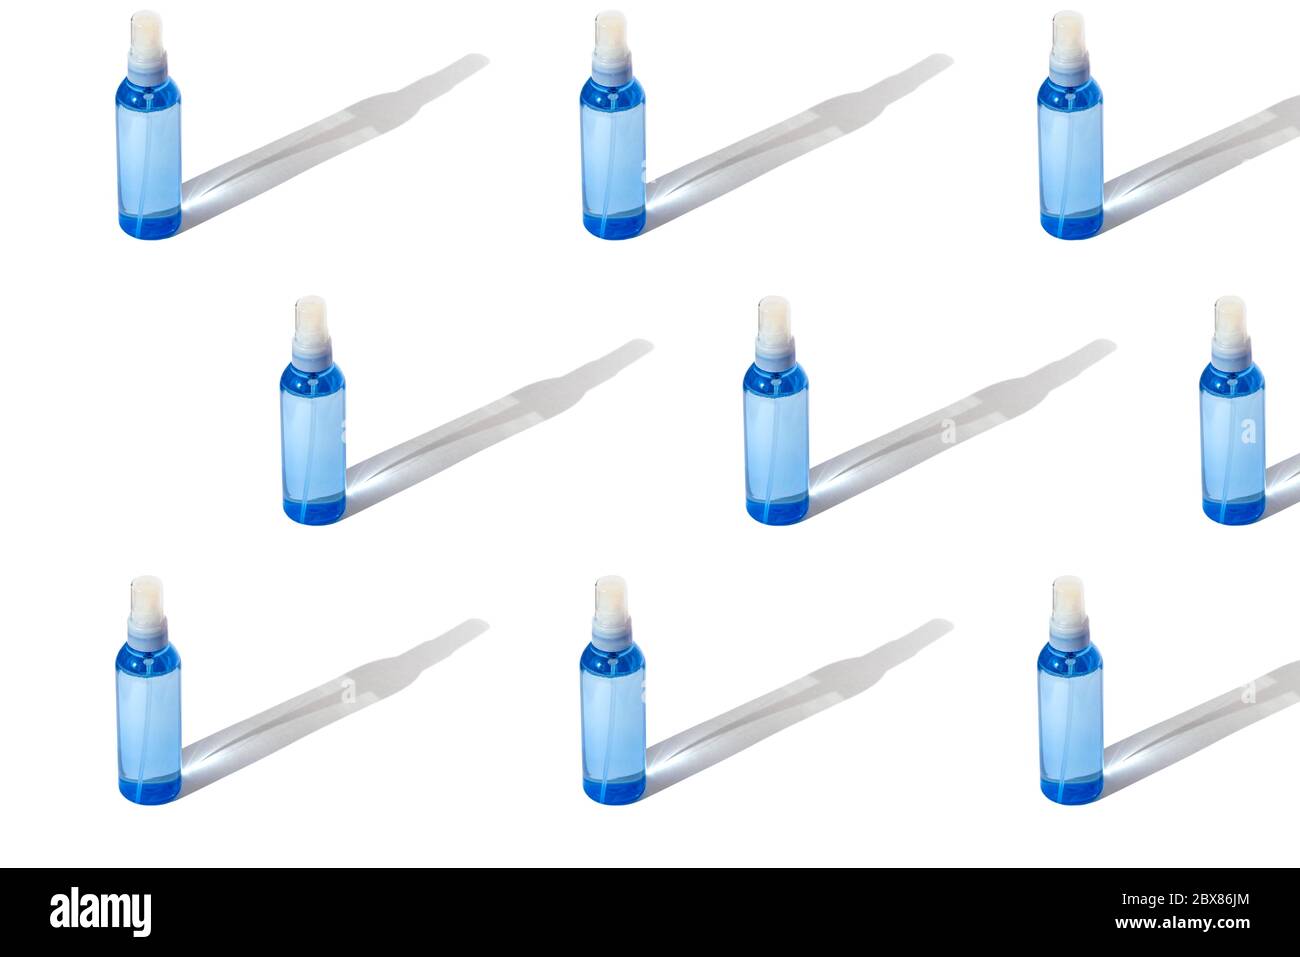 Motif avec des flacons de désinfectant pour les mains, des récipients en plastique bleu avec un désinfectant sur fond blanc Banque D'Images